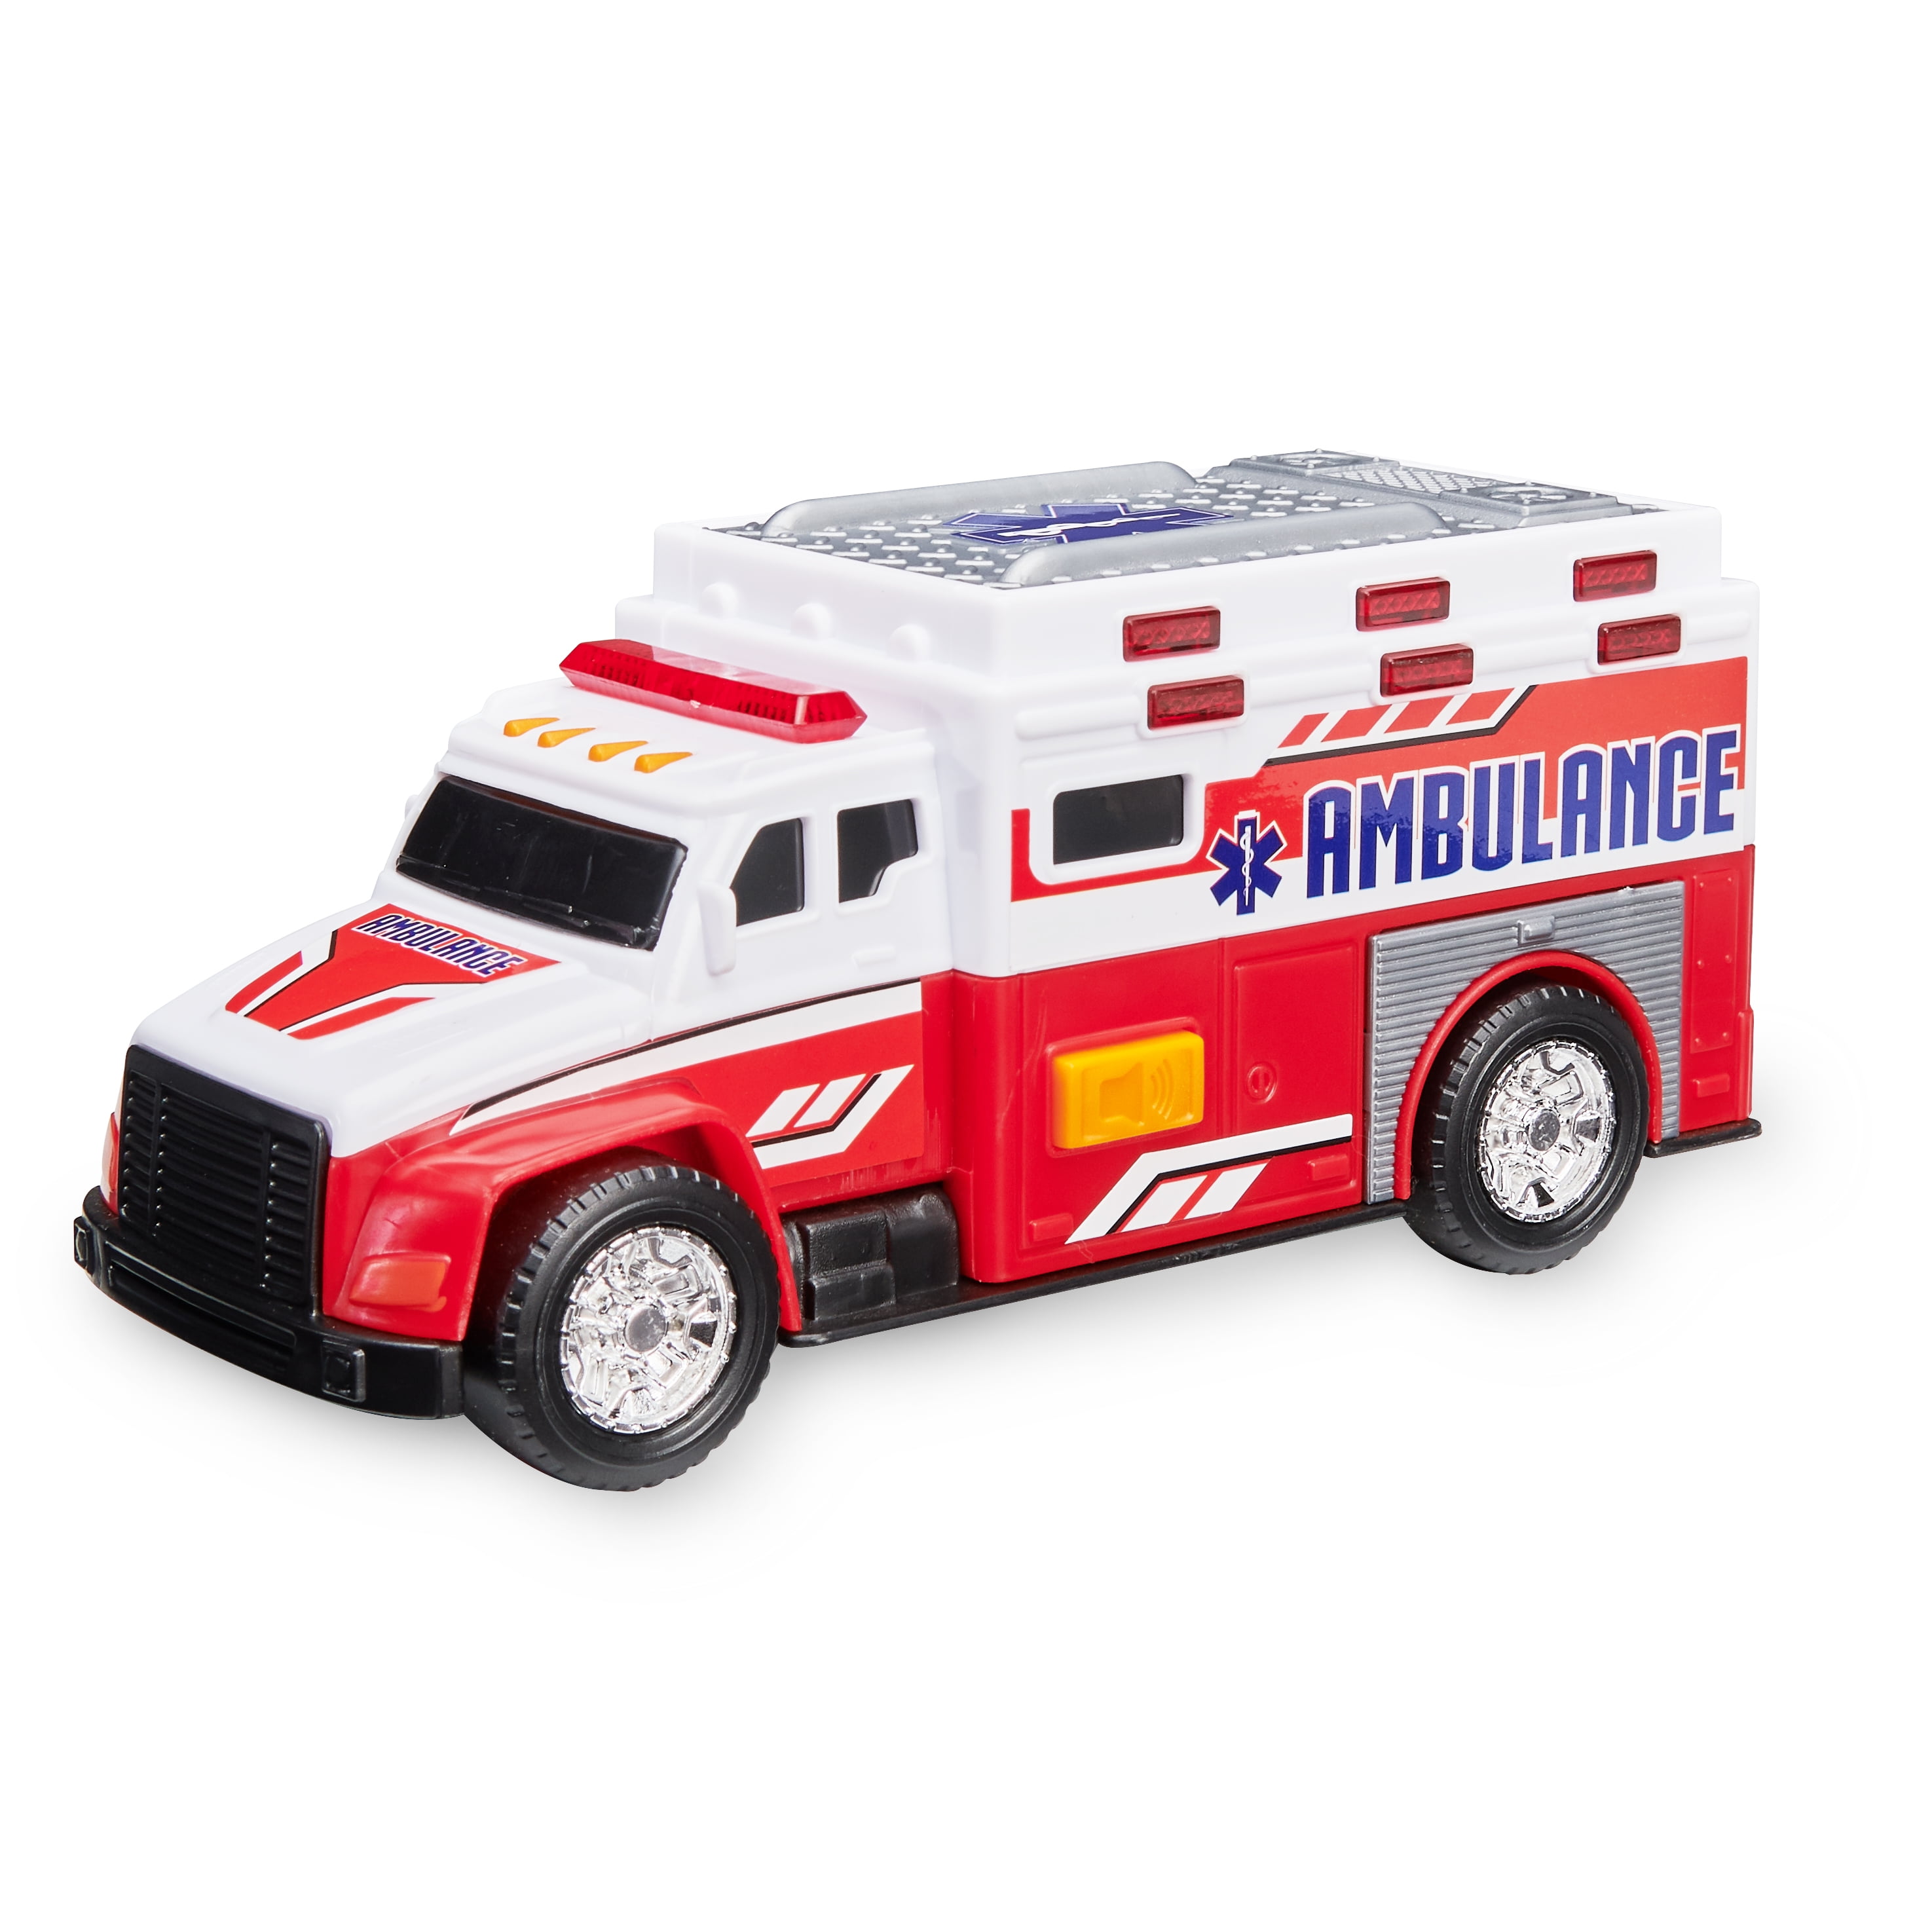 mini ambulance toy